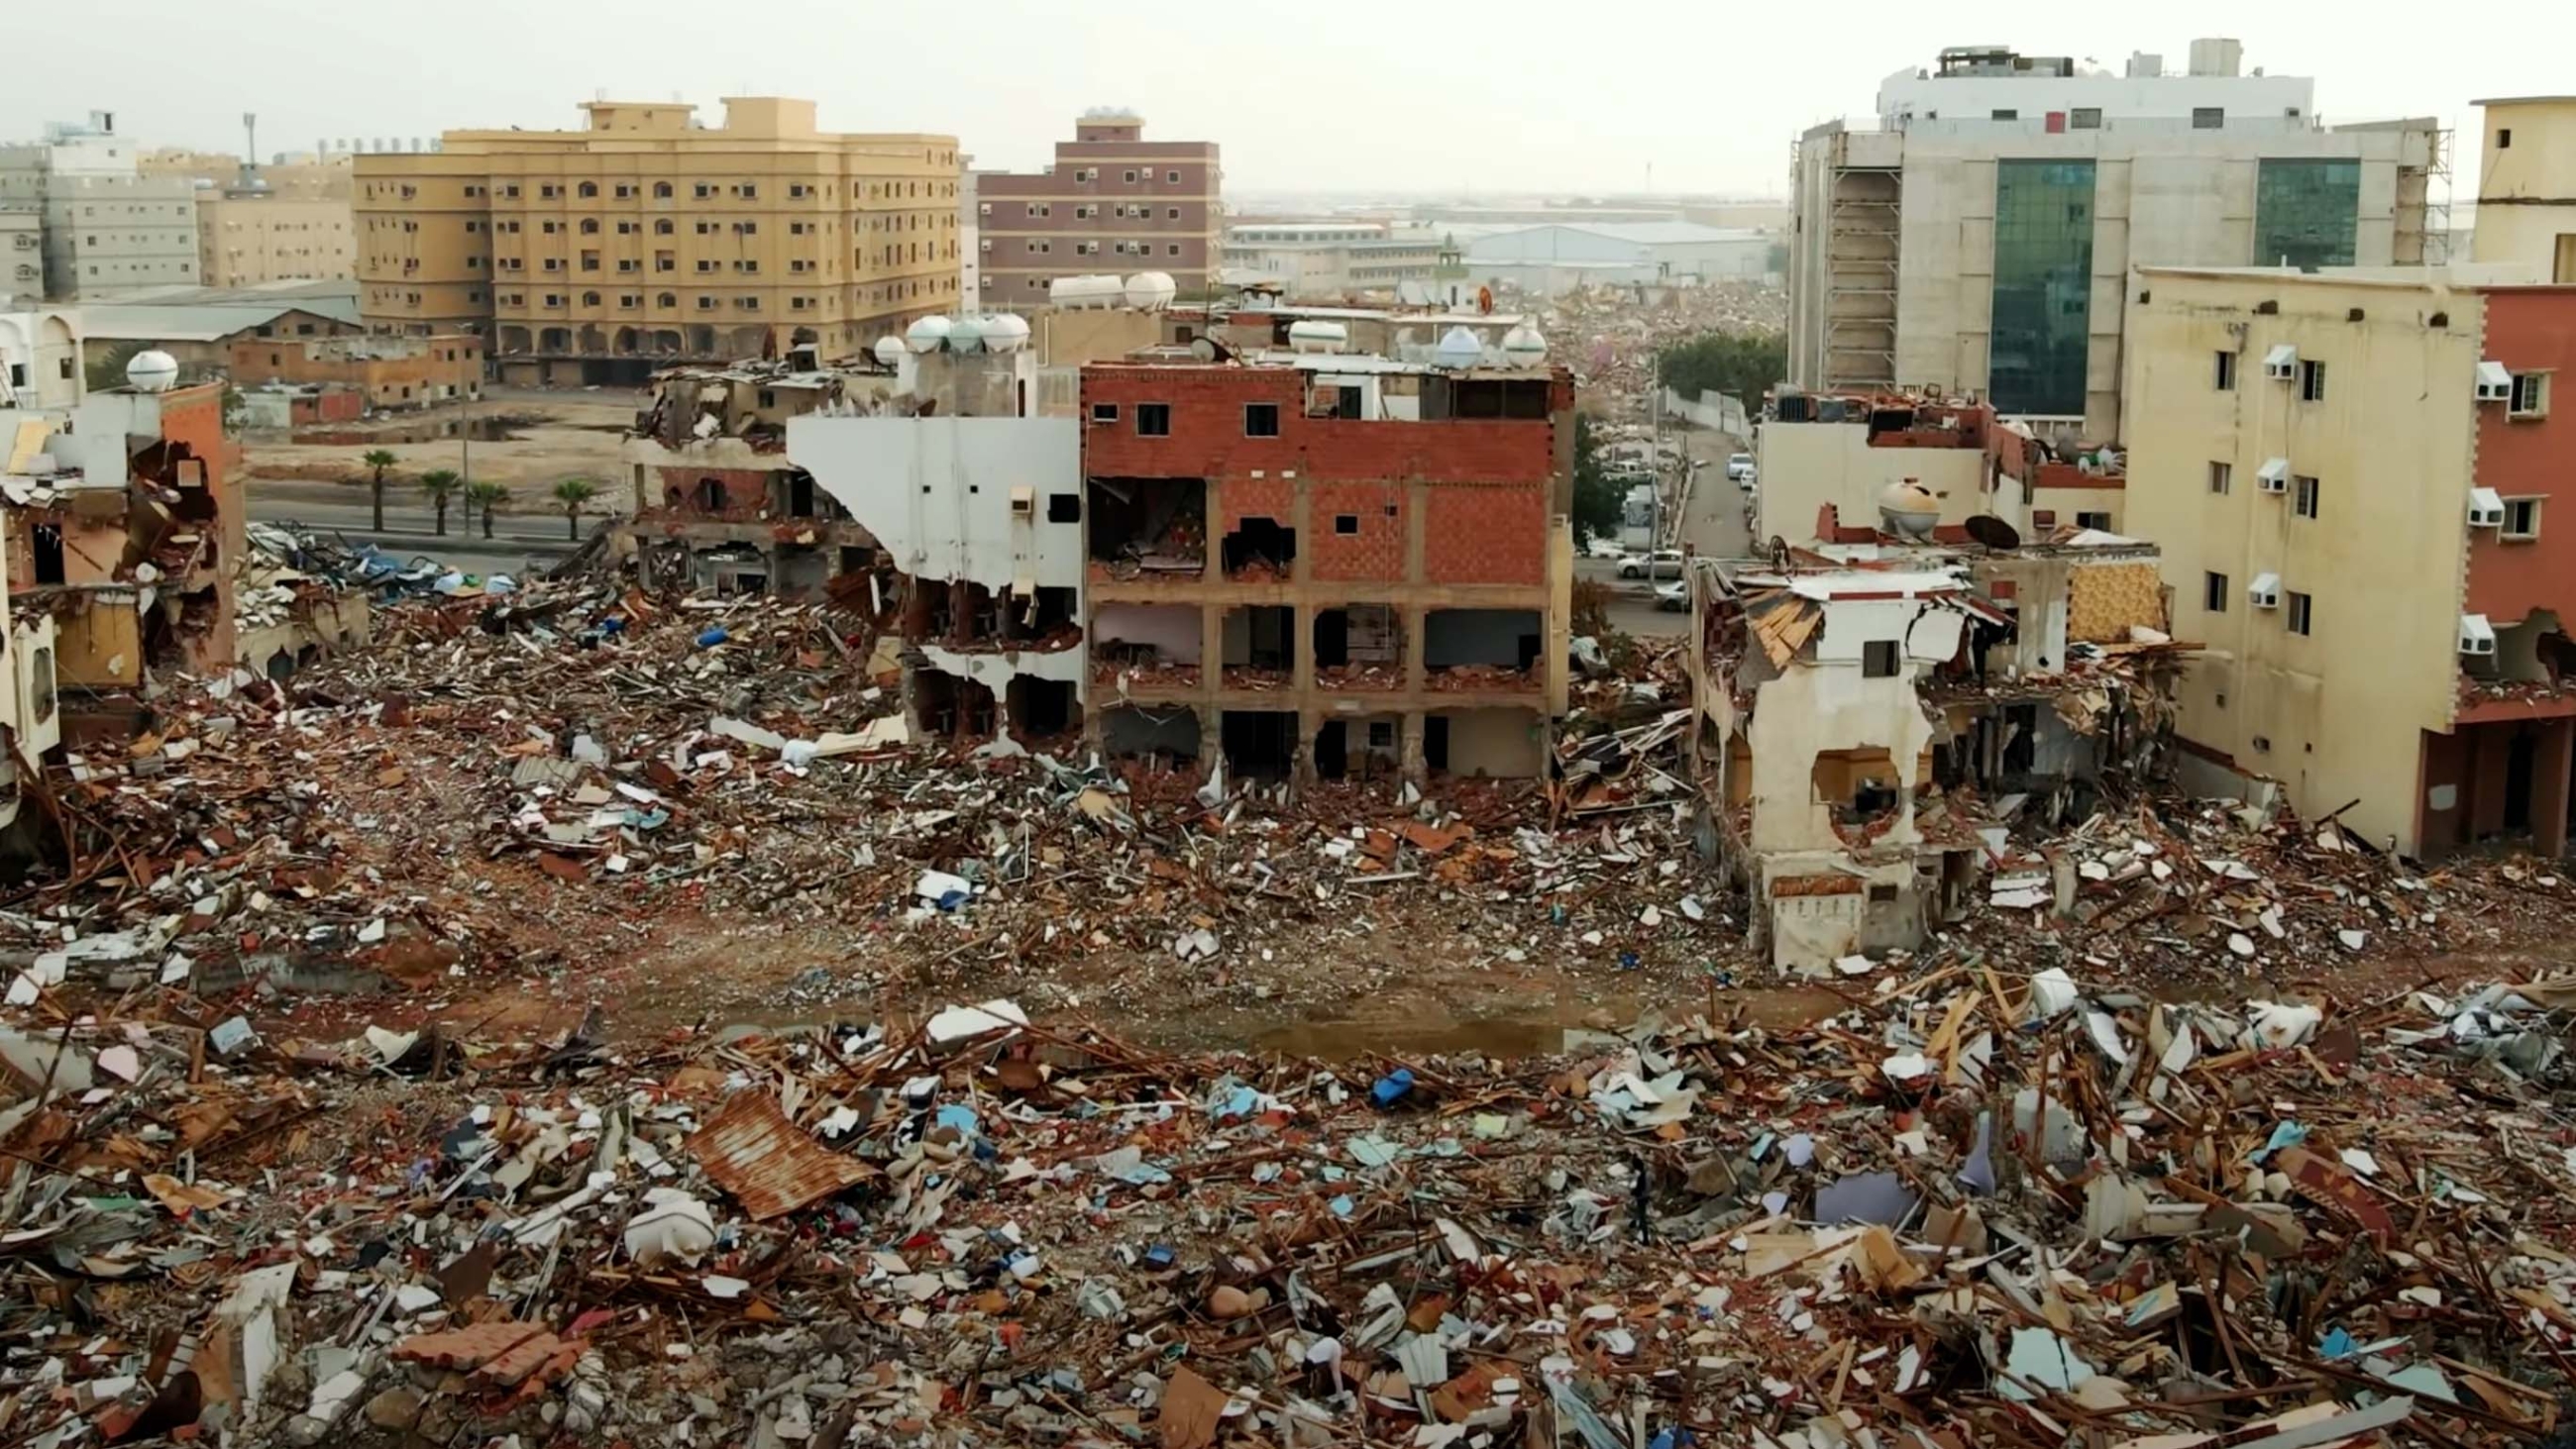 Capture d’écran extraite d’une vidéo en ligne montrant la destruction à grande échelle de quartiers entiers de Djeddah (YouTube)